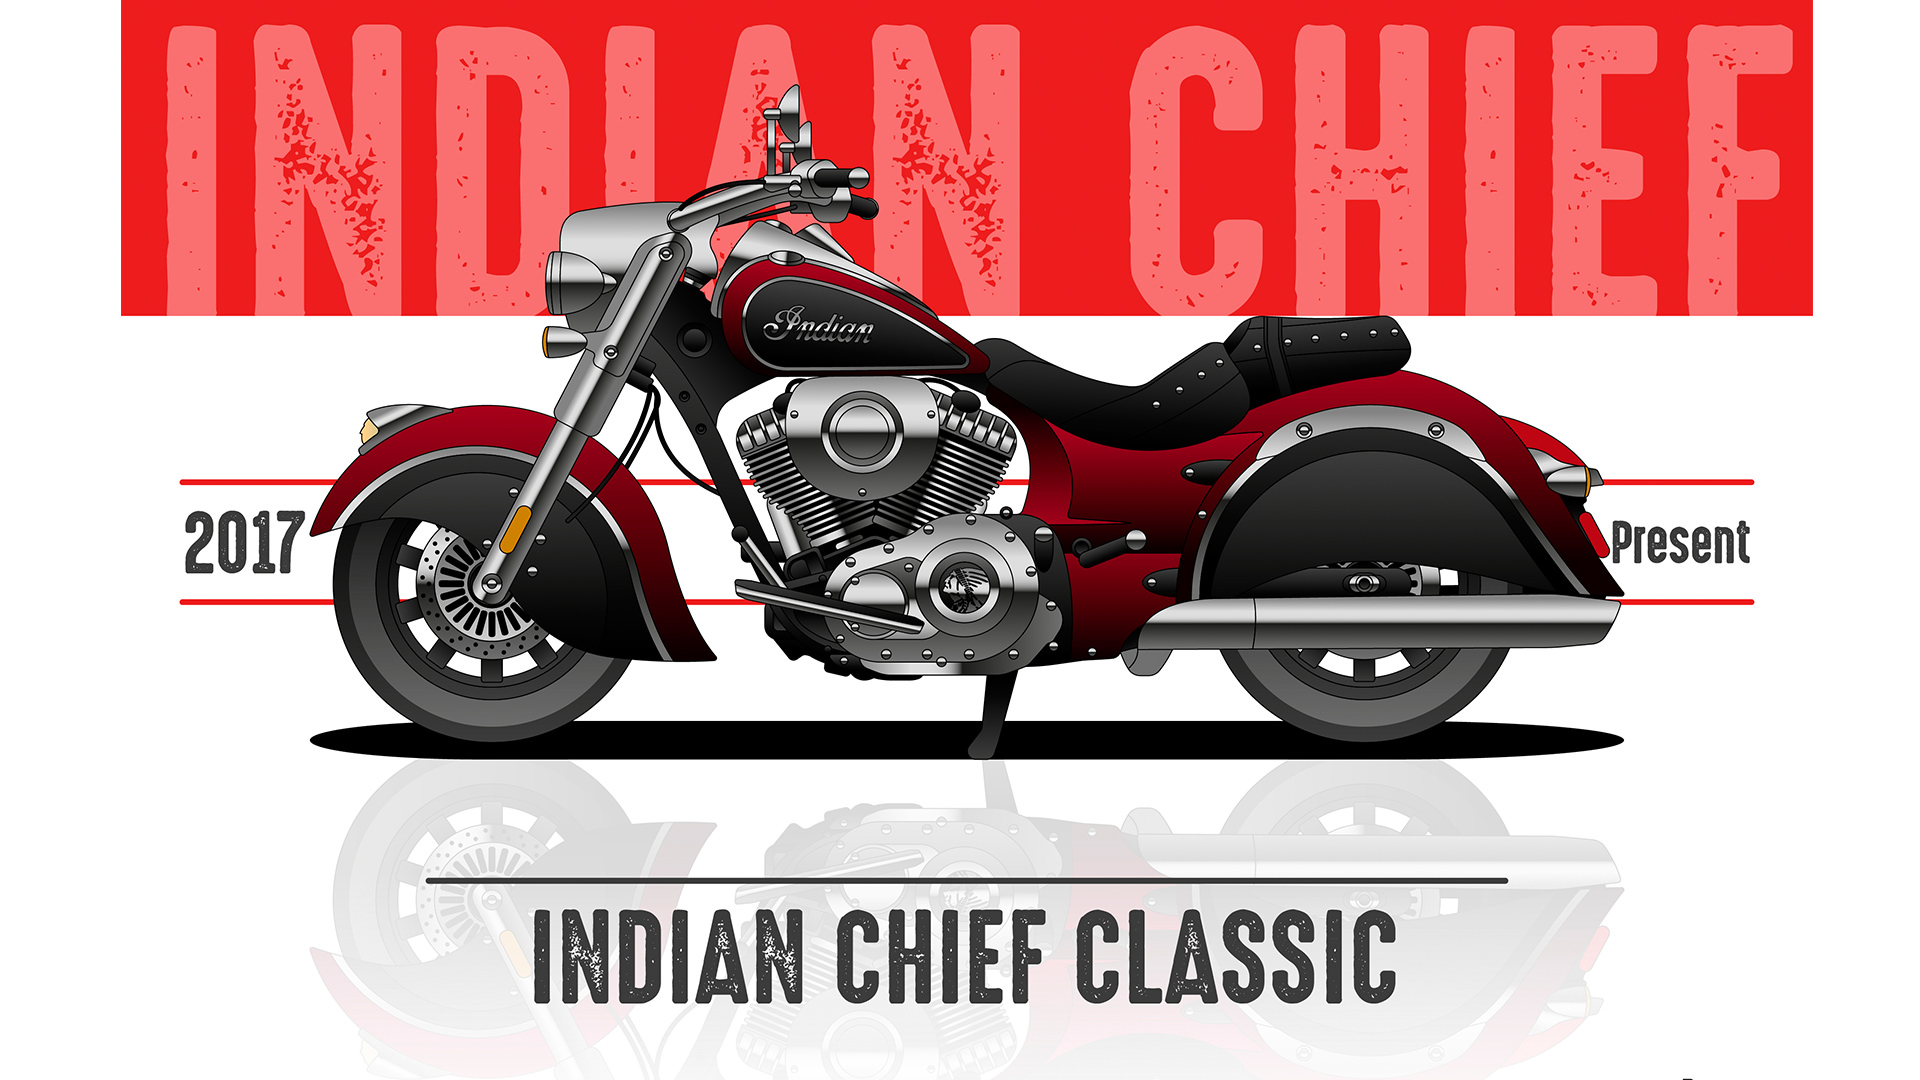 موتورسیکلت ایندین چیف / Indian Chief